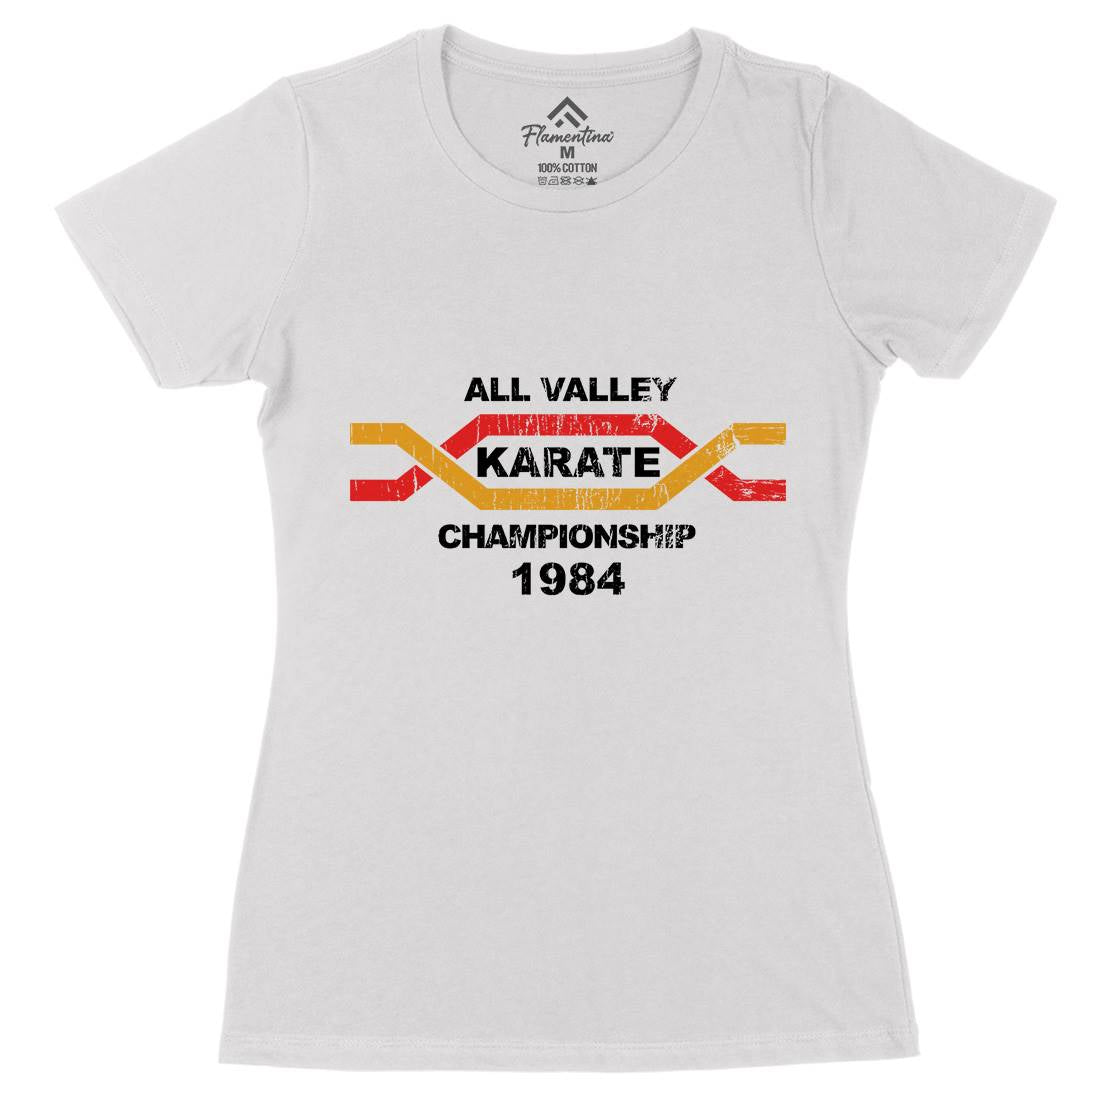 All Valley Womens Organic Crew Neck T-Shirt Sport D251